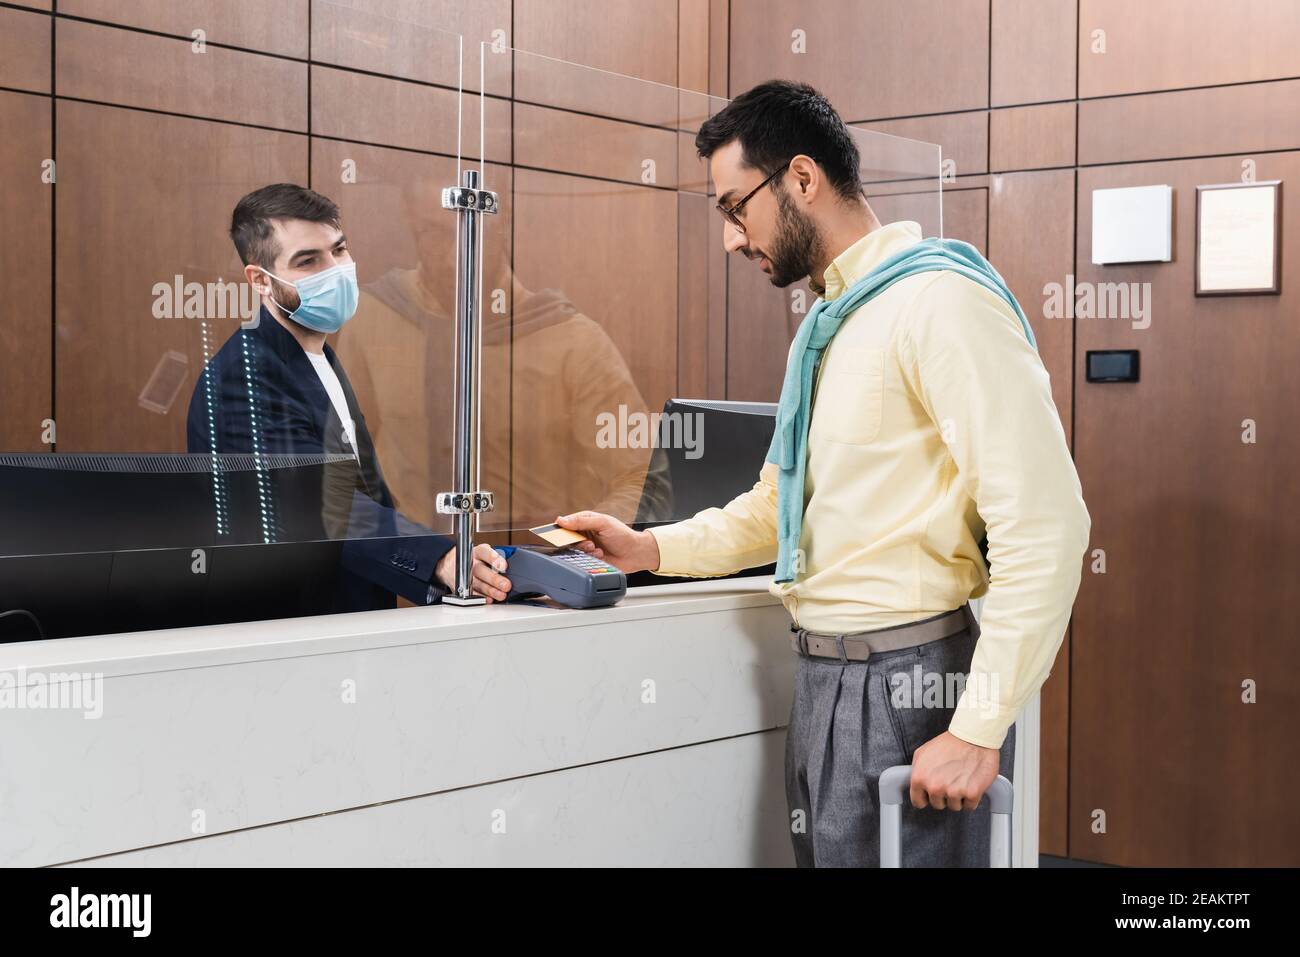 Rezeptionist in medizinischer Maske hält Zahlungsterminal in der Nähe muslimischer Mann Mit Koffer und Kreditkarte in der Hotellobby Stockfoto